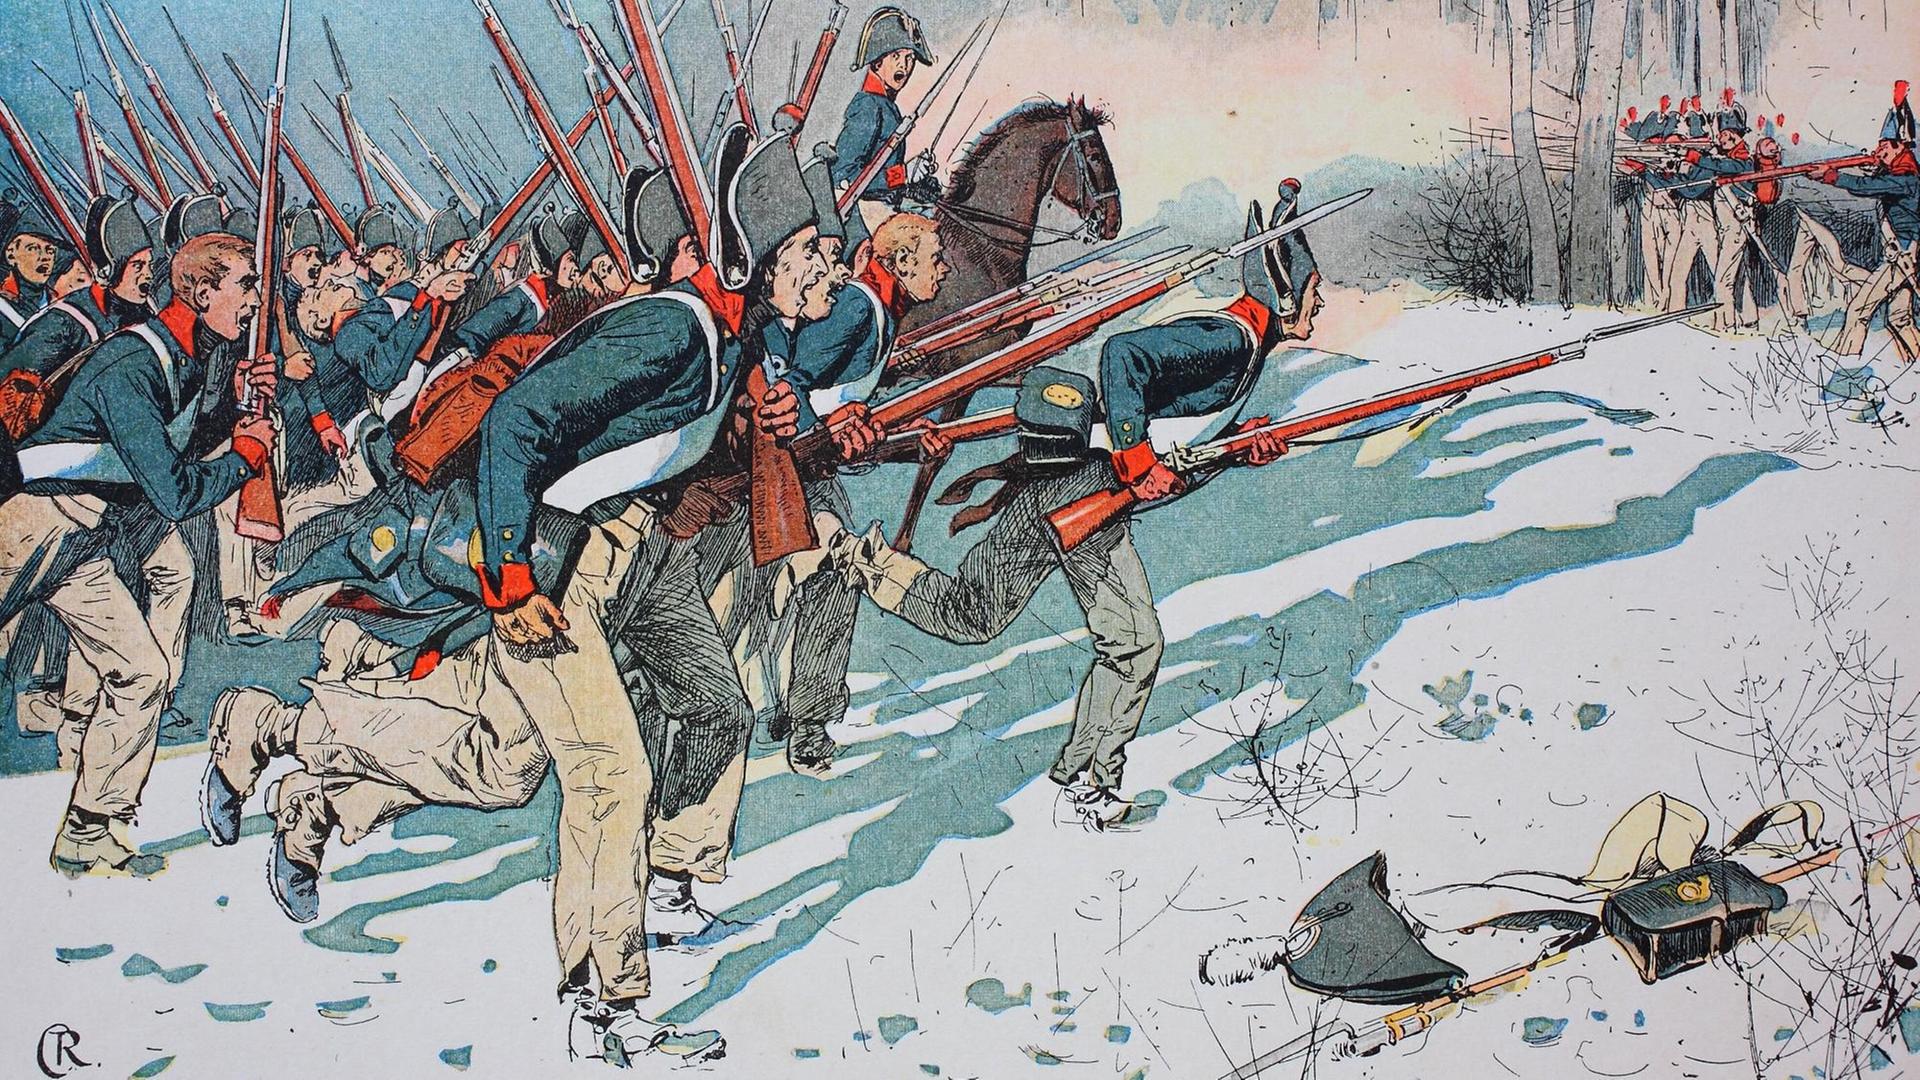 Ausschnitt einer historischen Darstellung der Schlacht von Eylau, die 1807 zwischen den preußischen Truppen und denen von Napoleon stattfand, bei denen Habseligkeiten von Soldaten neben dem Schlachtfeld liegen bleiben.